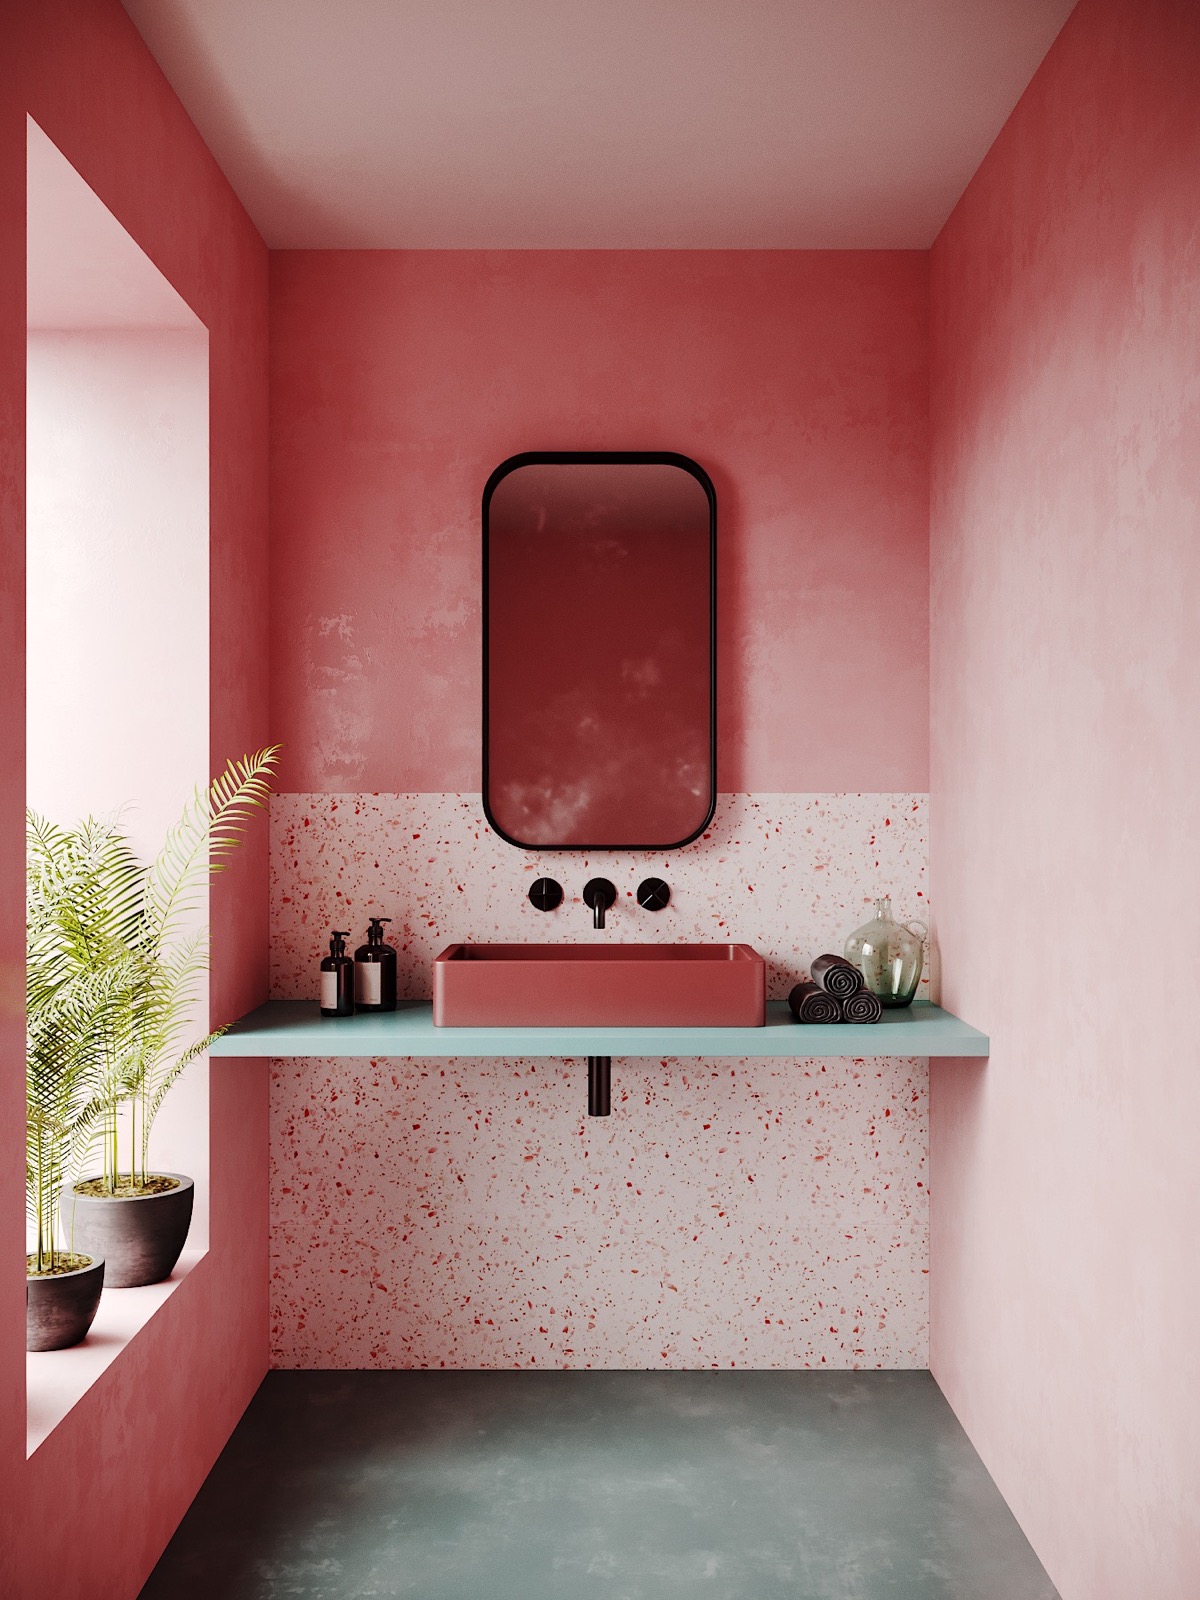 Một phòng tắm kết hợp được cả hai yếu tố dịu dàng và mạnh mẽ nhờ bức tường sơn màu hồng kết hợp ốp gạch terrazzo, kệ mở màu xanh, những chậu cây cảnh trang trí và sàn nhà bê tông. Tất cả tạo nên sự hài hòa và tươi sáng tuyệt đối!